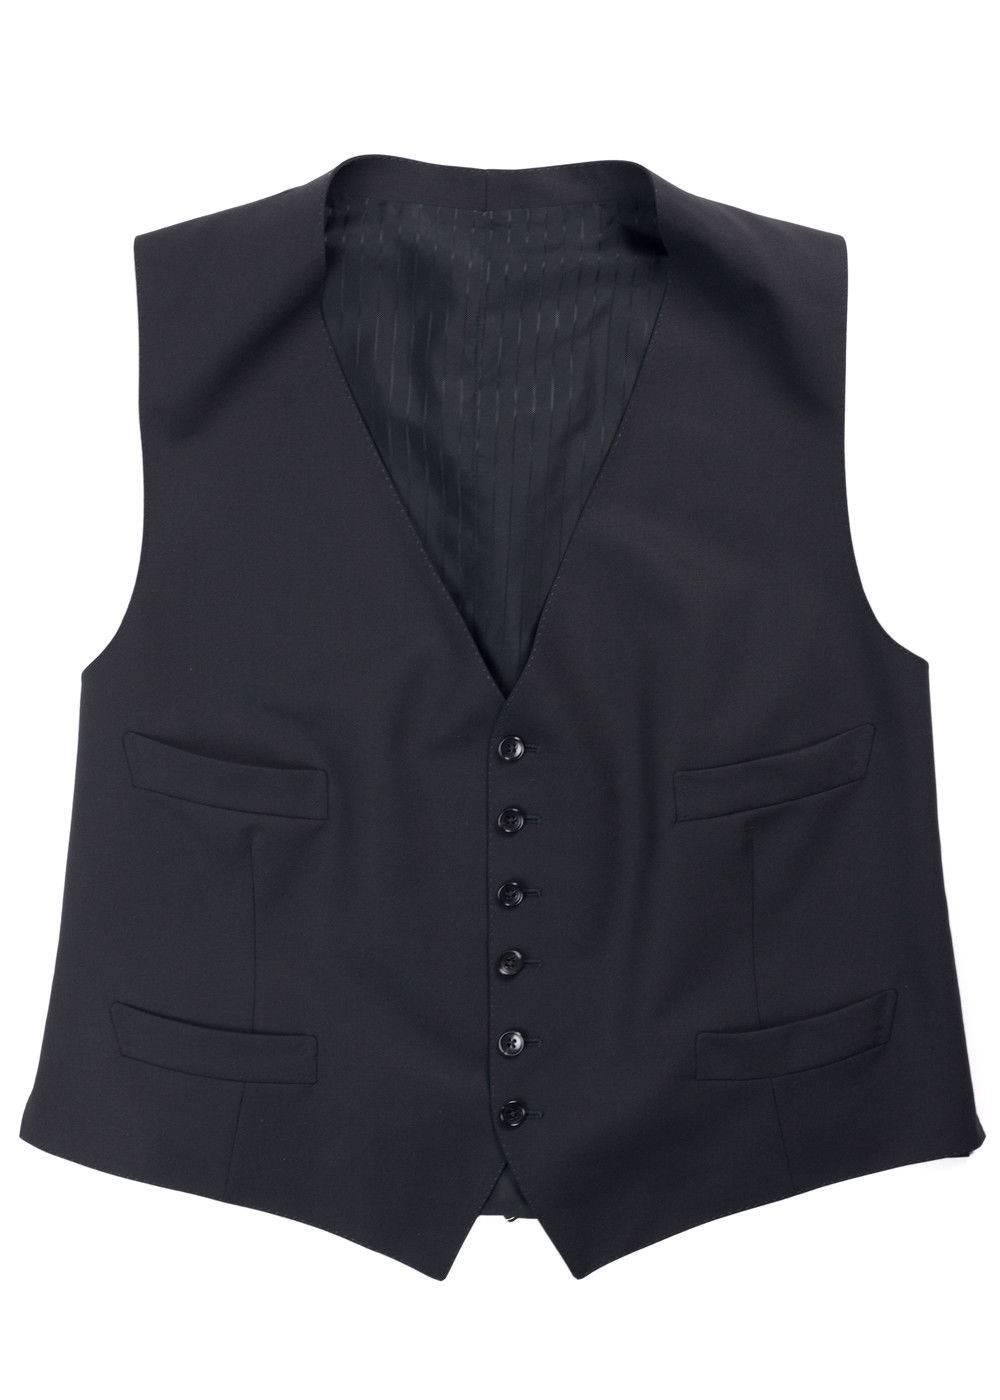 Tom Ford Black Windsor Base Wool Sharkskin 3Pc Suit For Sale 2